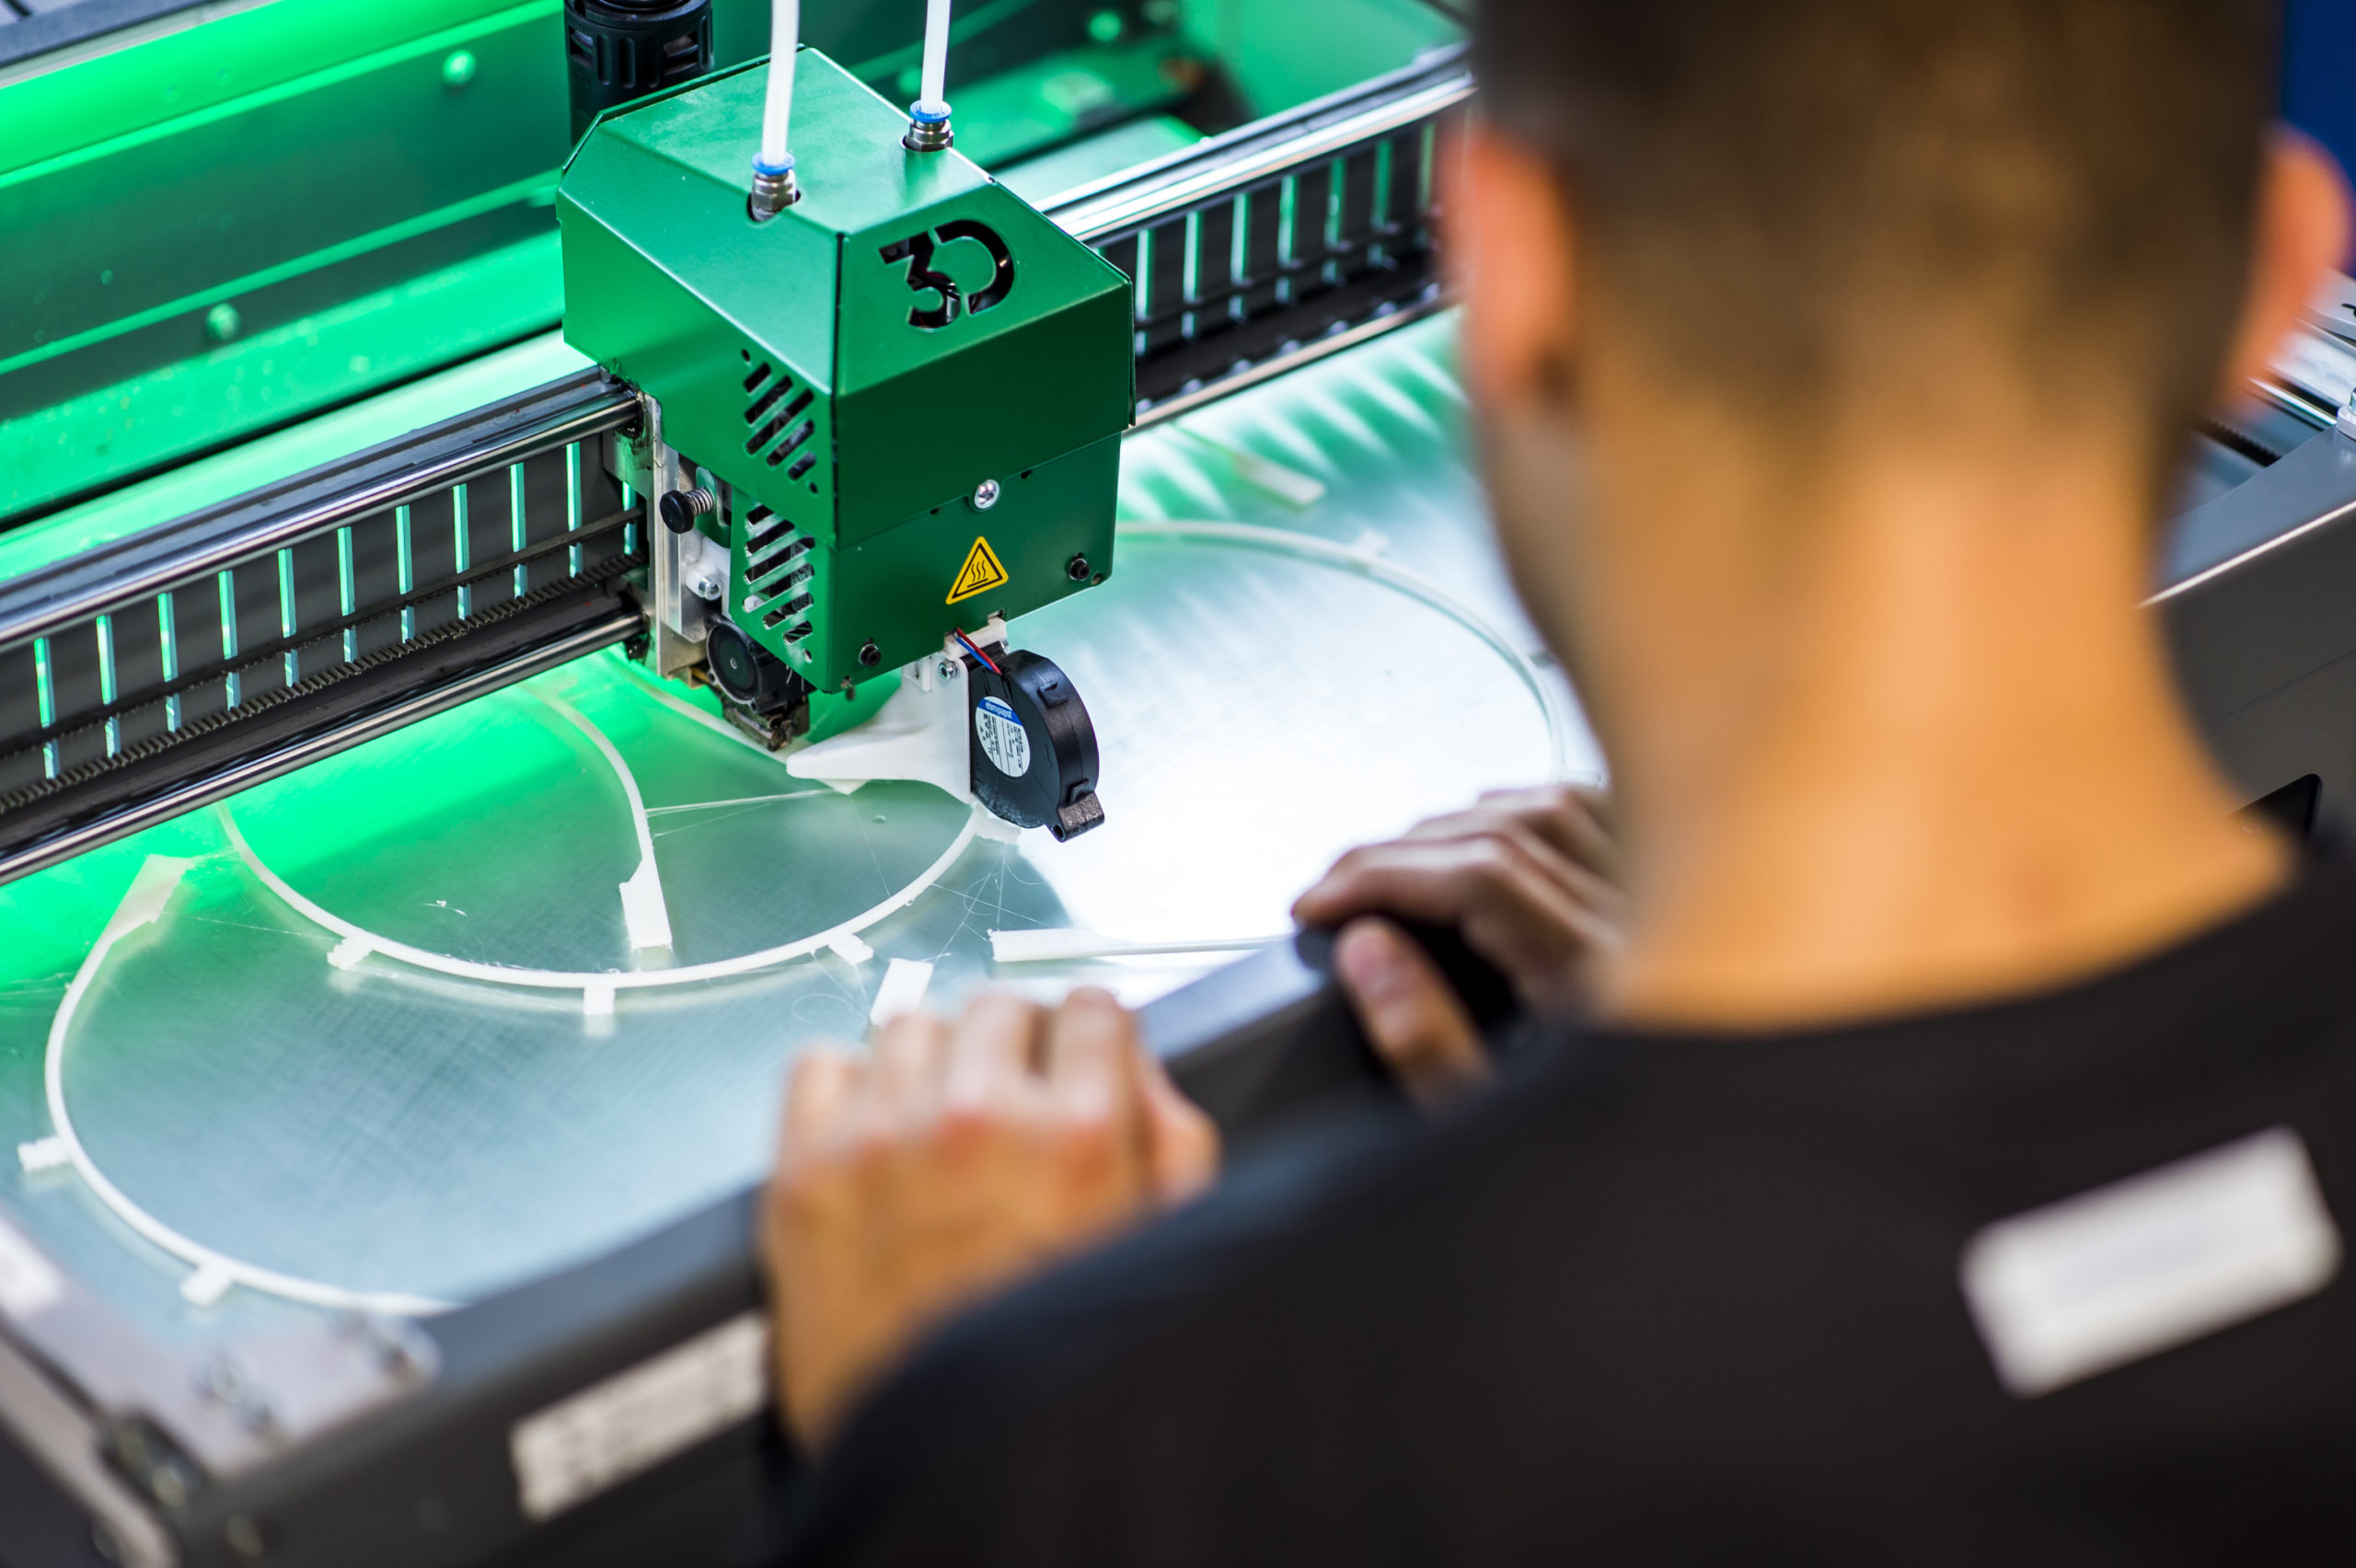 Eine zentrale Rolle spielt der 3D-Drucker in der digital ausgestatteten Lehrwerkstätte: 5 Bügel für die Schutzvisiere können gleichzeitig produziert werden.